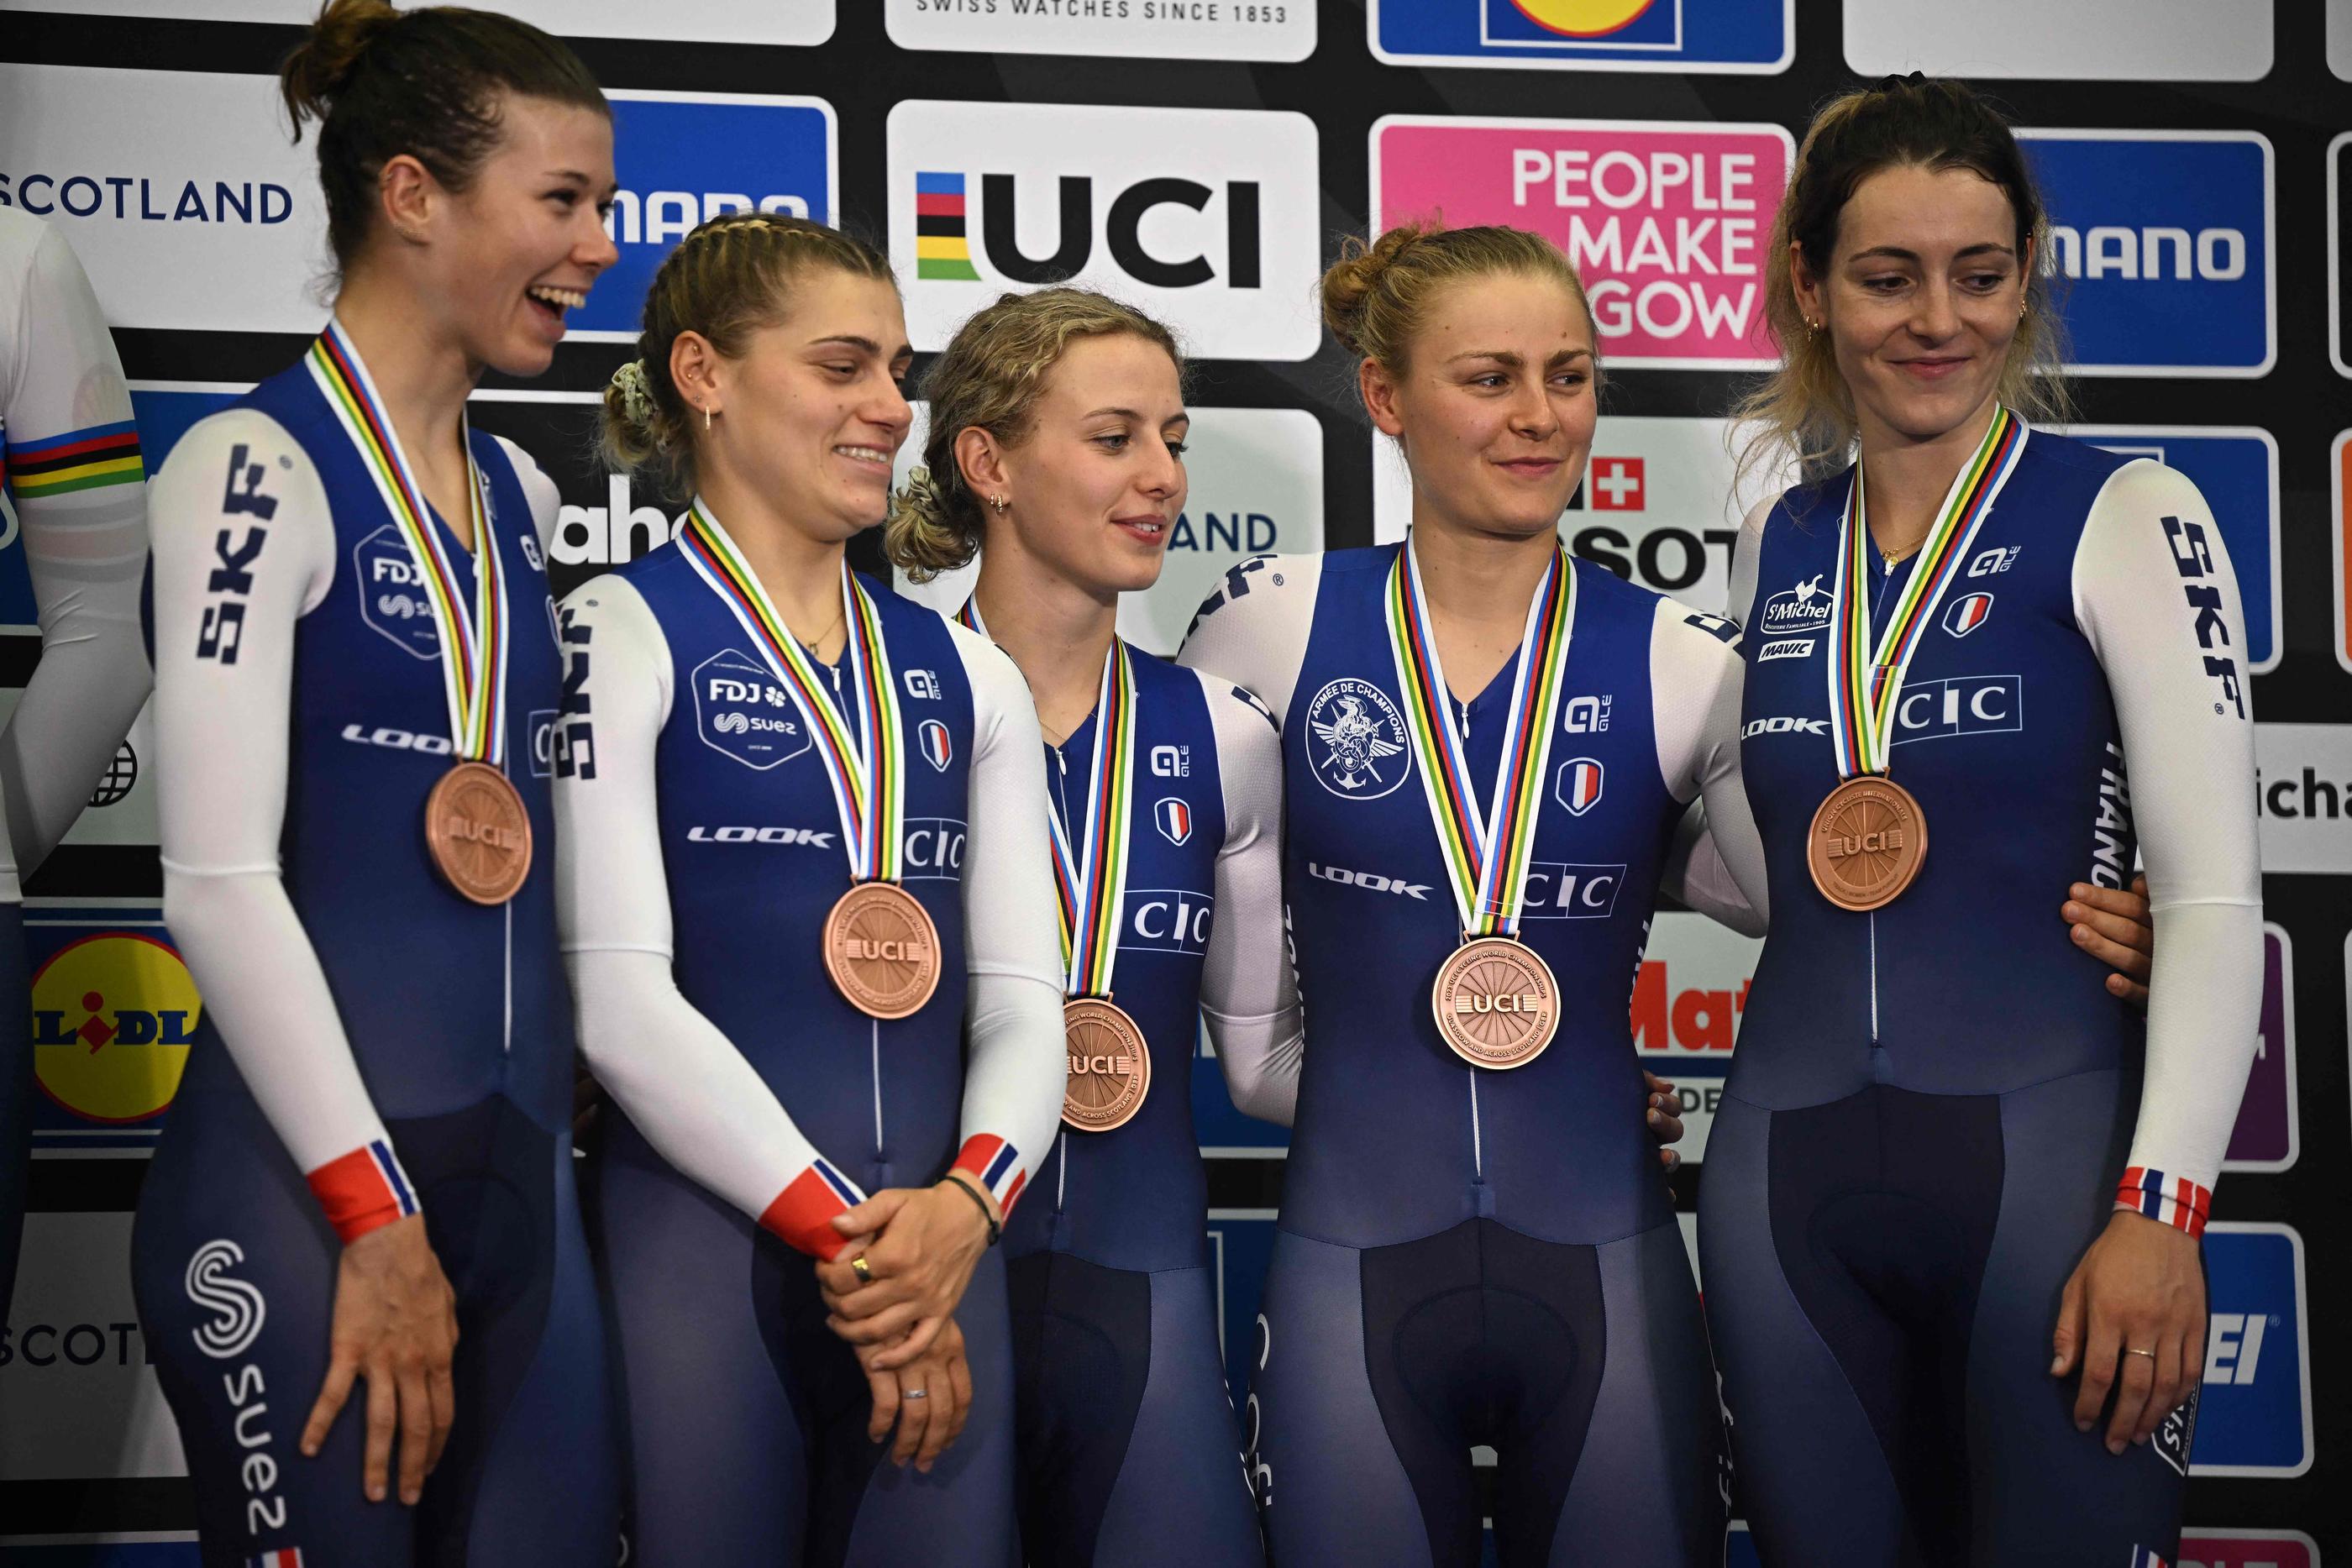 Les Françaises ont savouré leur podium. (Photo Oli SCARFF / AFP)